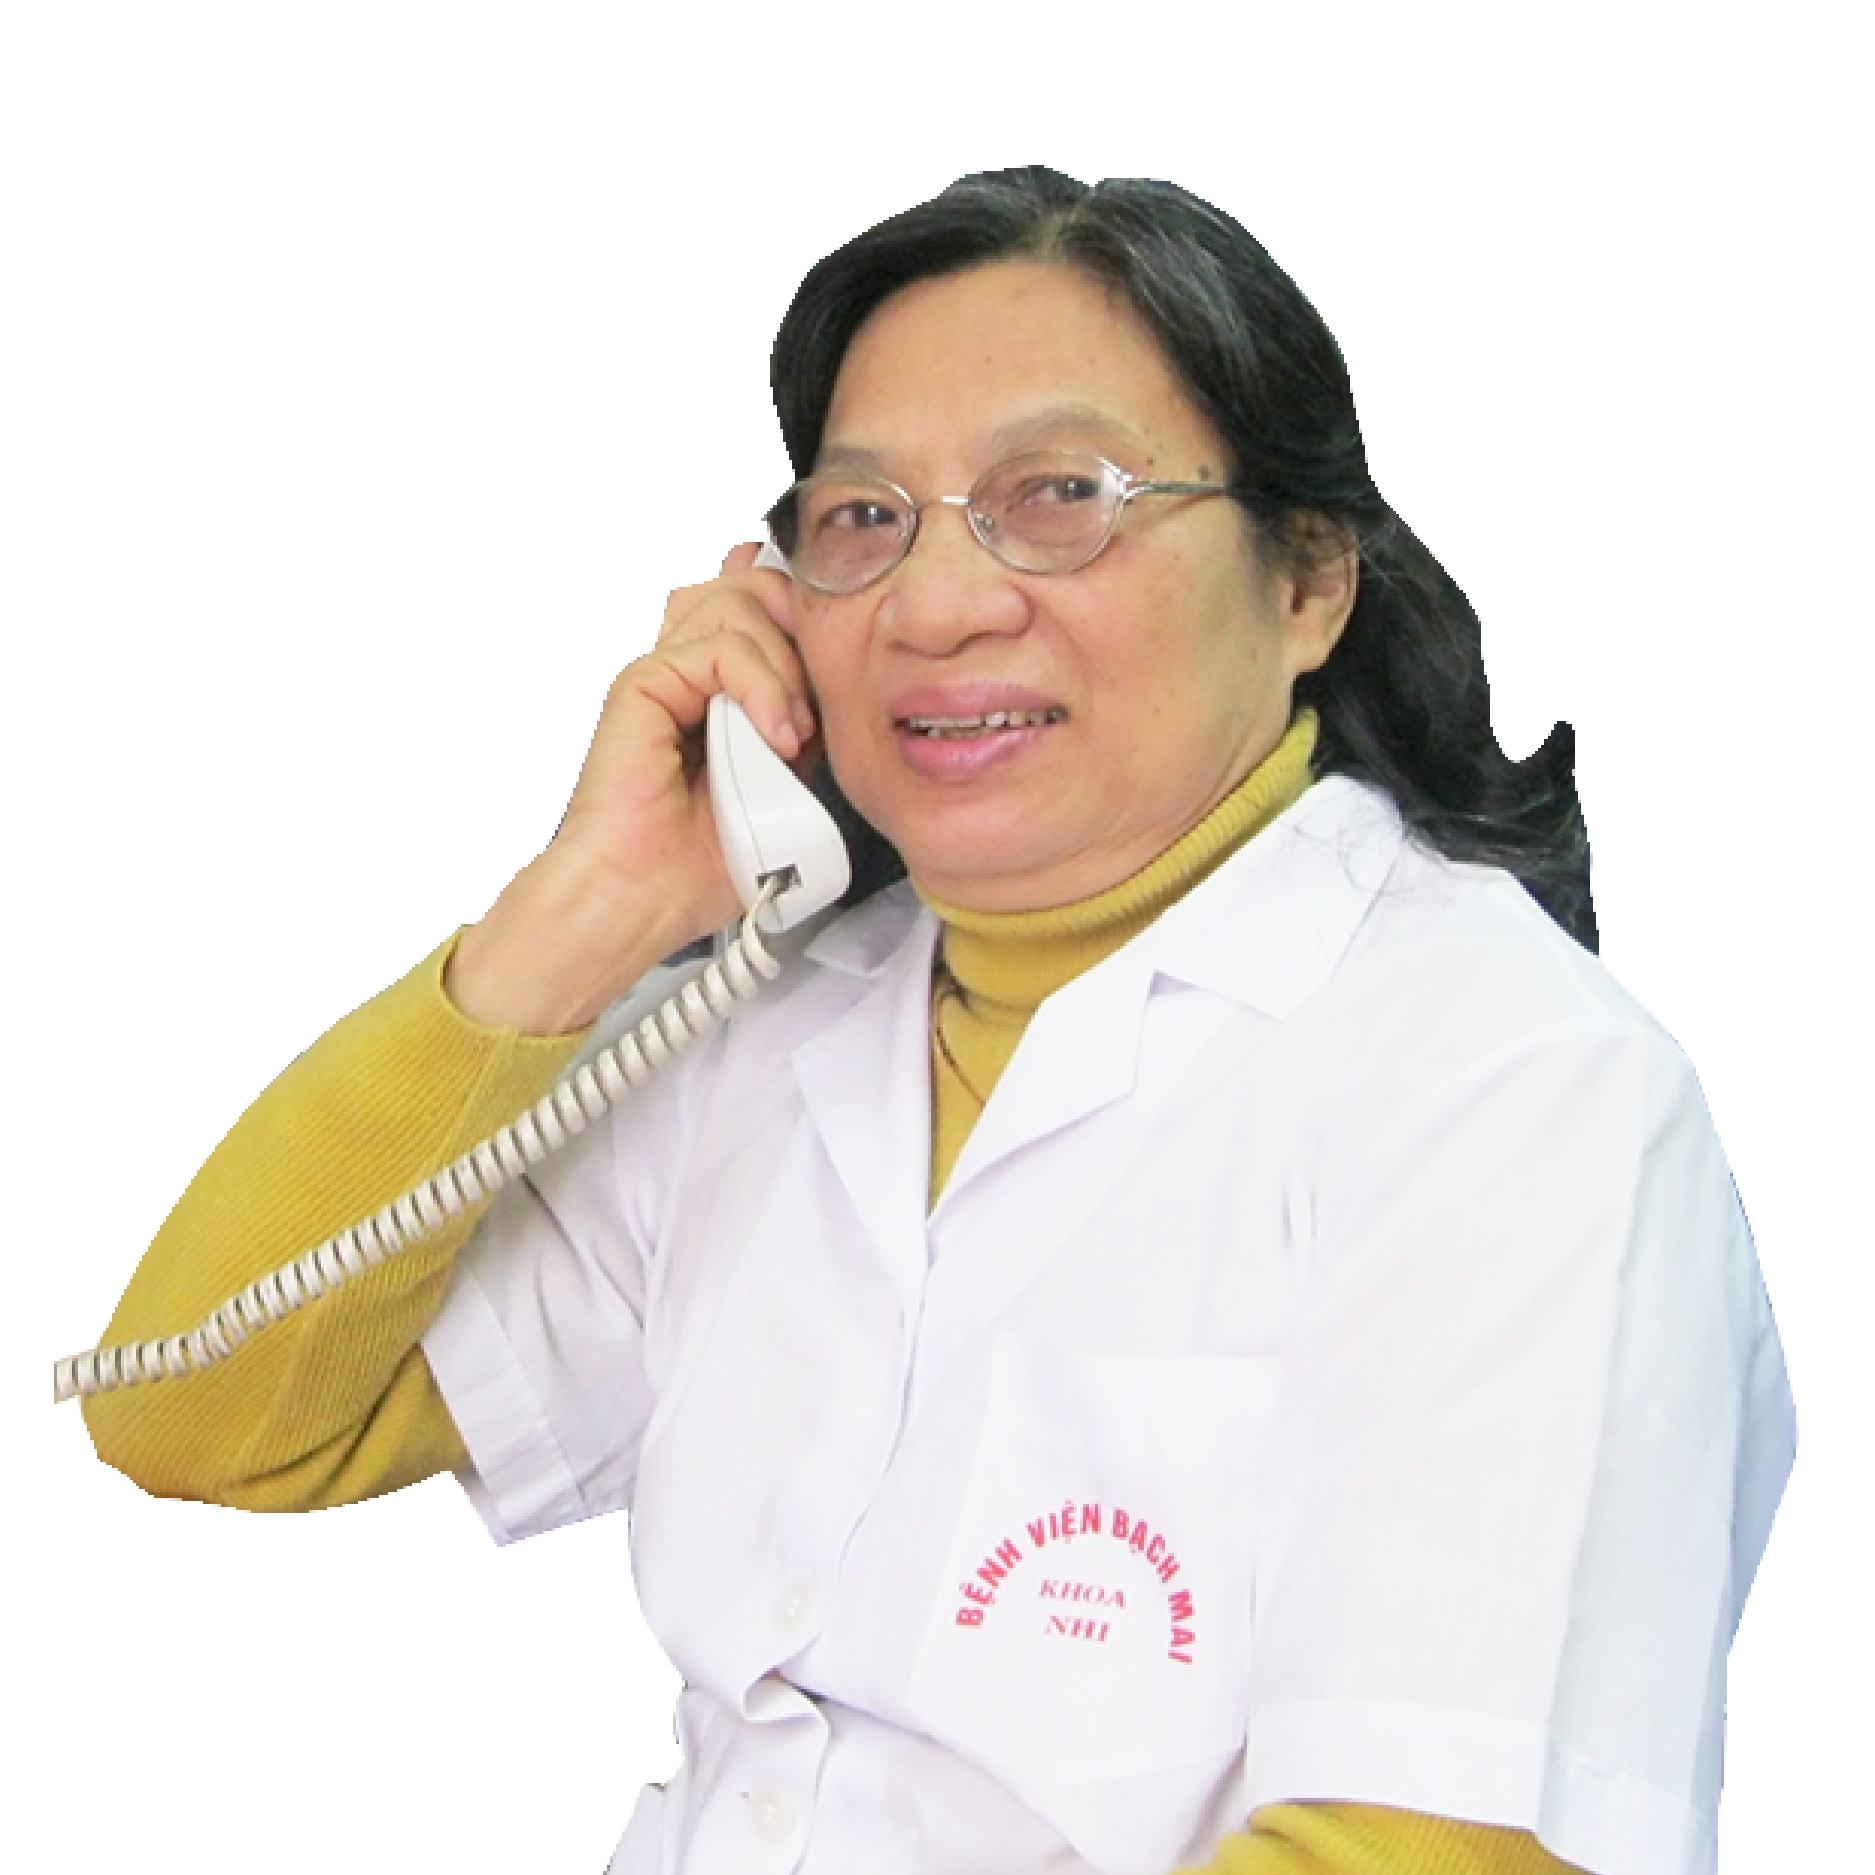 Giới thiệu về bác sĩ Phạm Thị Thục Nguyên trưởng phòng khám và tư vấn dinh dưỡng Bệnh viện Bạch Mai